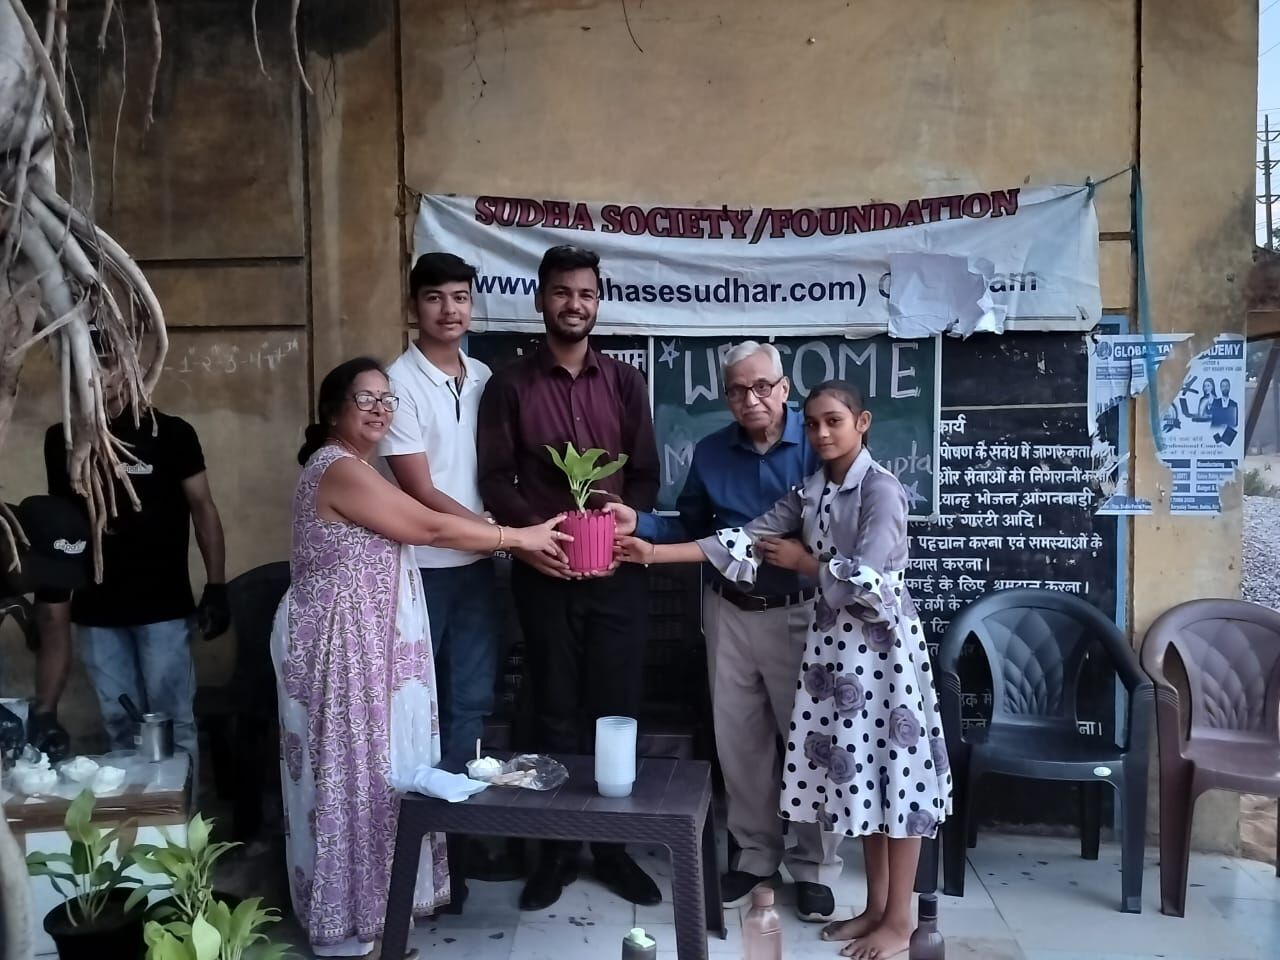 Sudha Society Foundation ने 18 जून को अमासिवनी रायपुर में अंतर्राष्ट्रीय पिकनिक दिवस का आयोजन किया